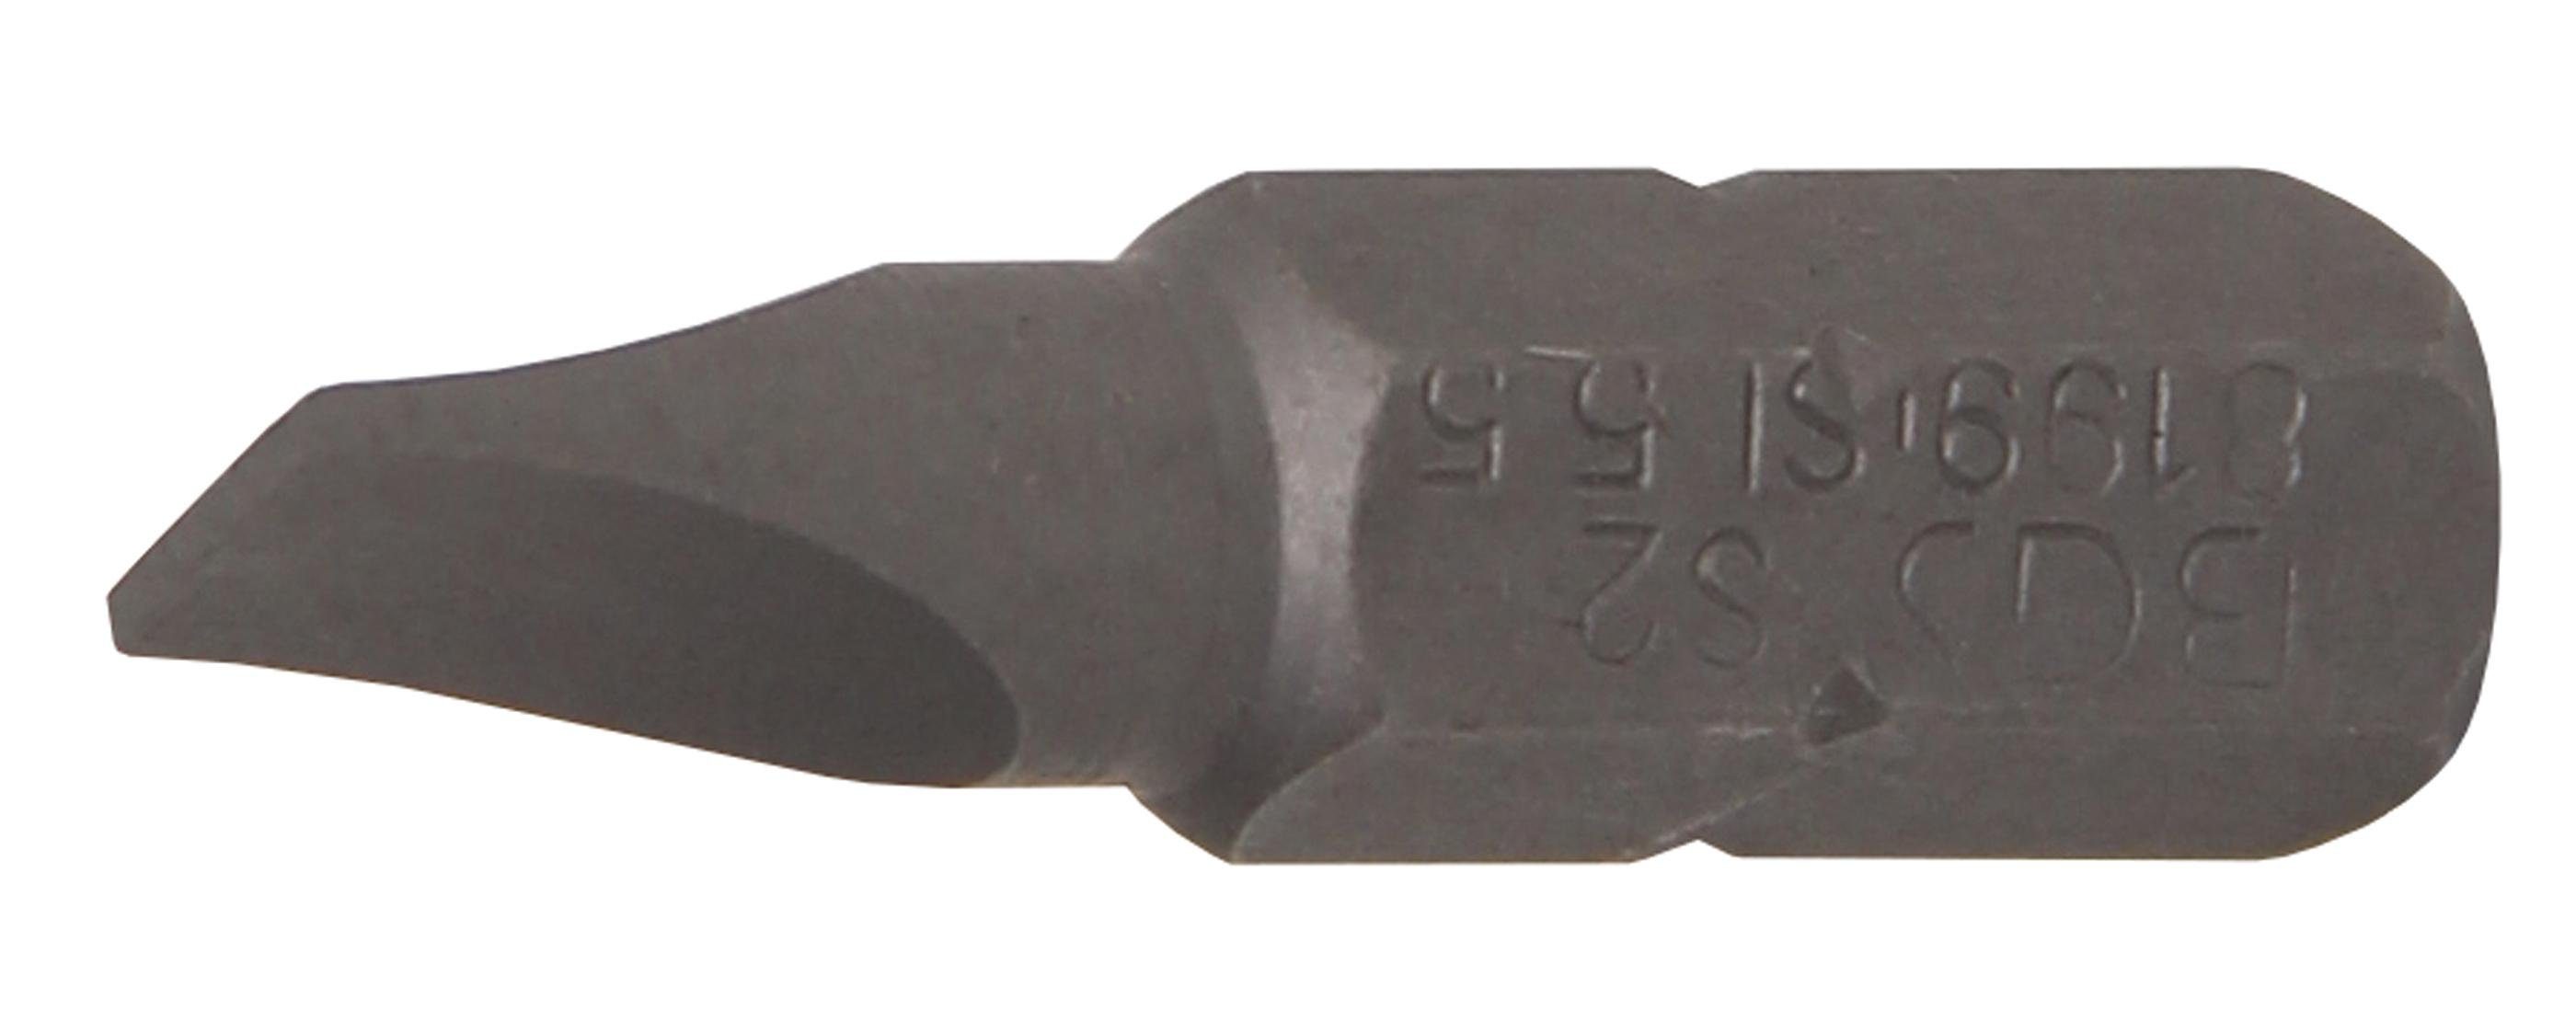 BGS technic Bit-Schraubendreher Bit, Antrieb Außensechskant 6,3 mm (1/4), Schlitz 5,5 mm